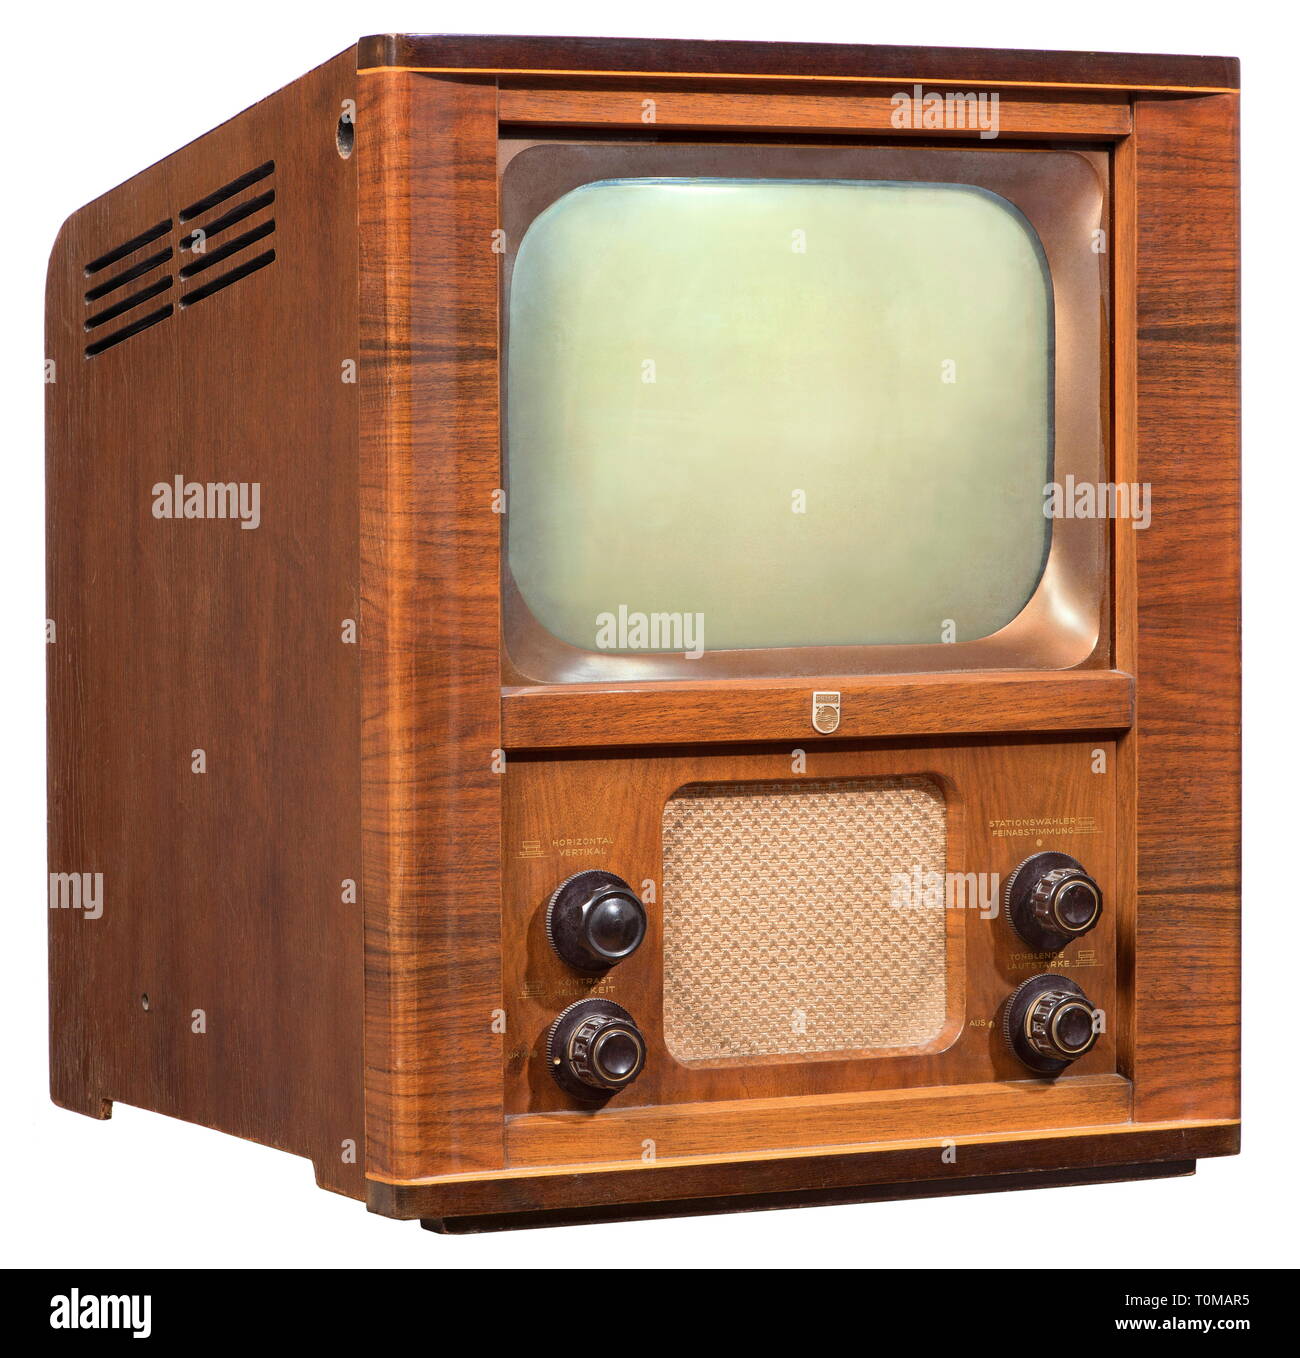 Broadcast, televisione, televisore Philips TD 1410 U, nickname: speed trap  (a causa del telaio di stile), uno del primo dopoguerra unità tabletop,  dimensioni schermo: 36 centimetro diagonal, prezzo originale 1951: DM 1.500,